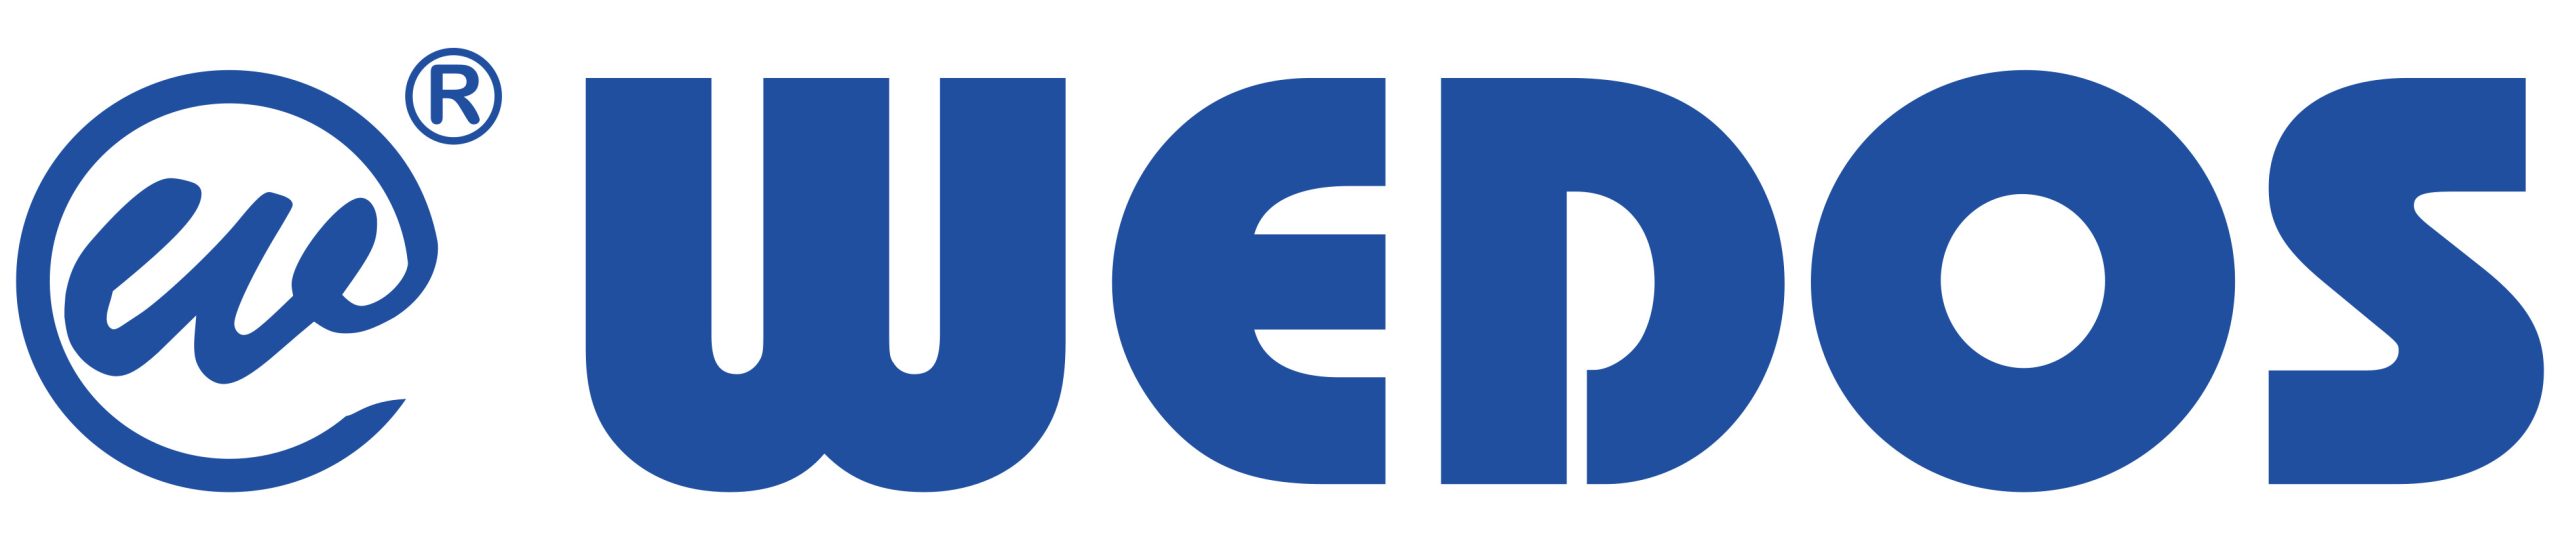 wedos logo